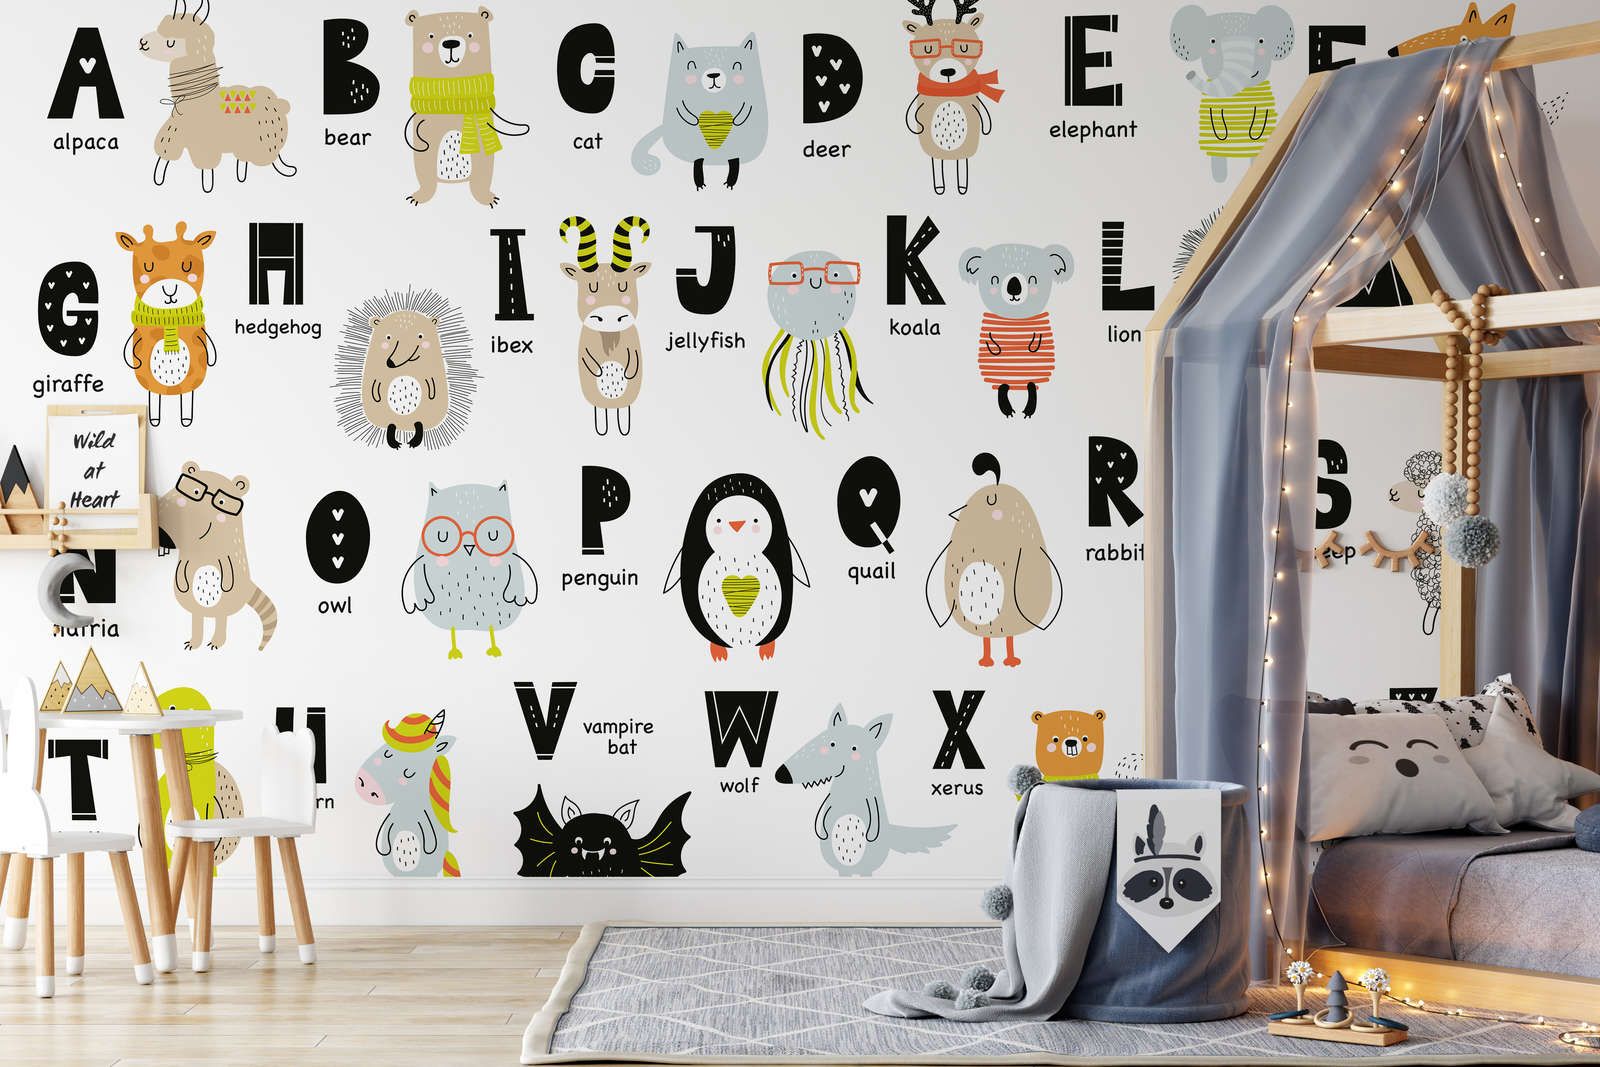             papiers peints à impression numérique Alphabet avec animaux et noms d'animaux - intissé structuré
        